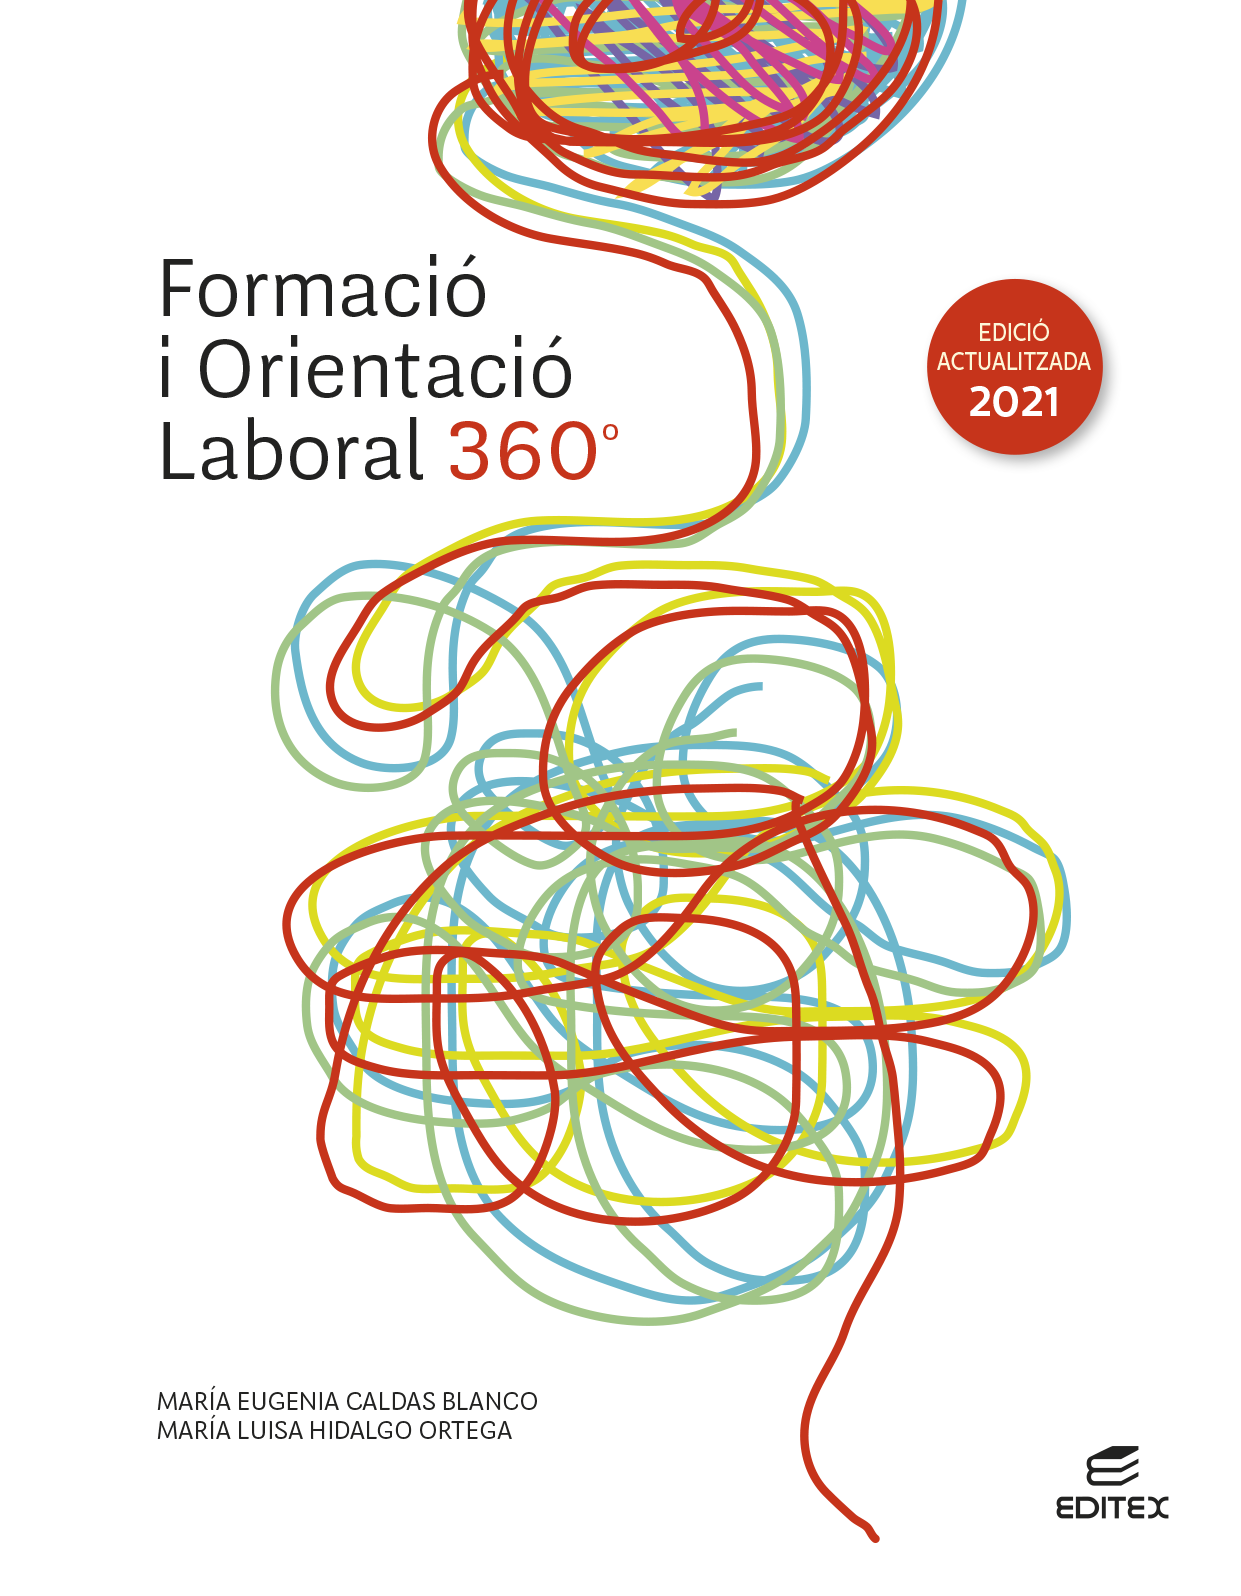 Formació i orientació laboral 360° (Edició actualitzada 2021)